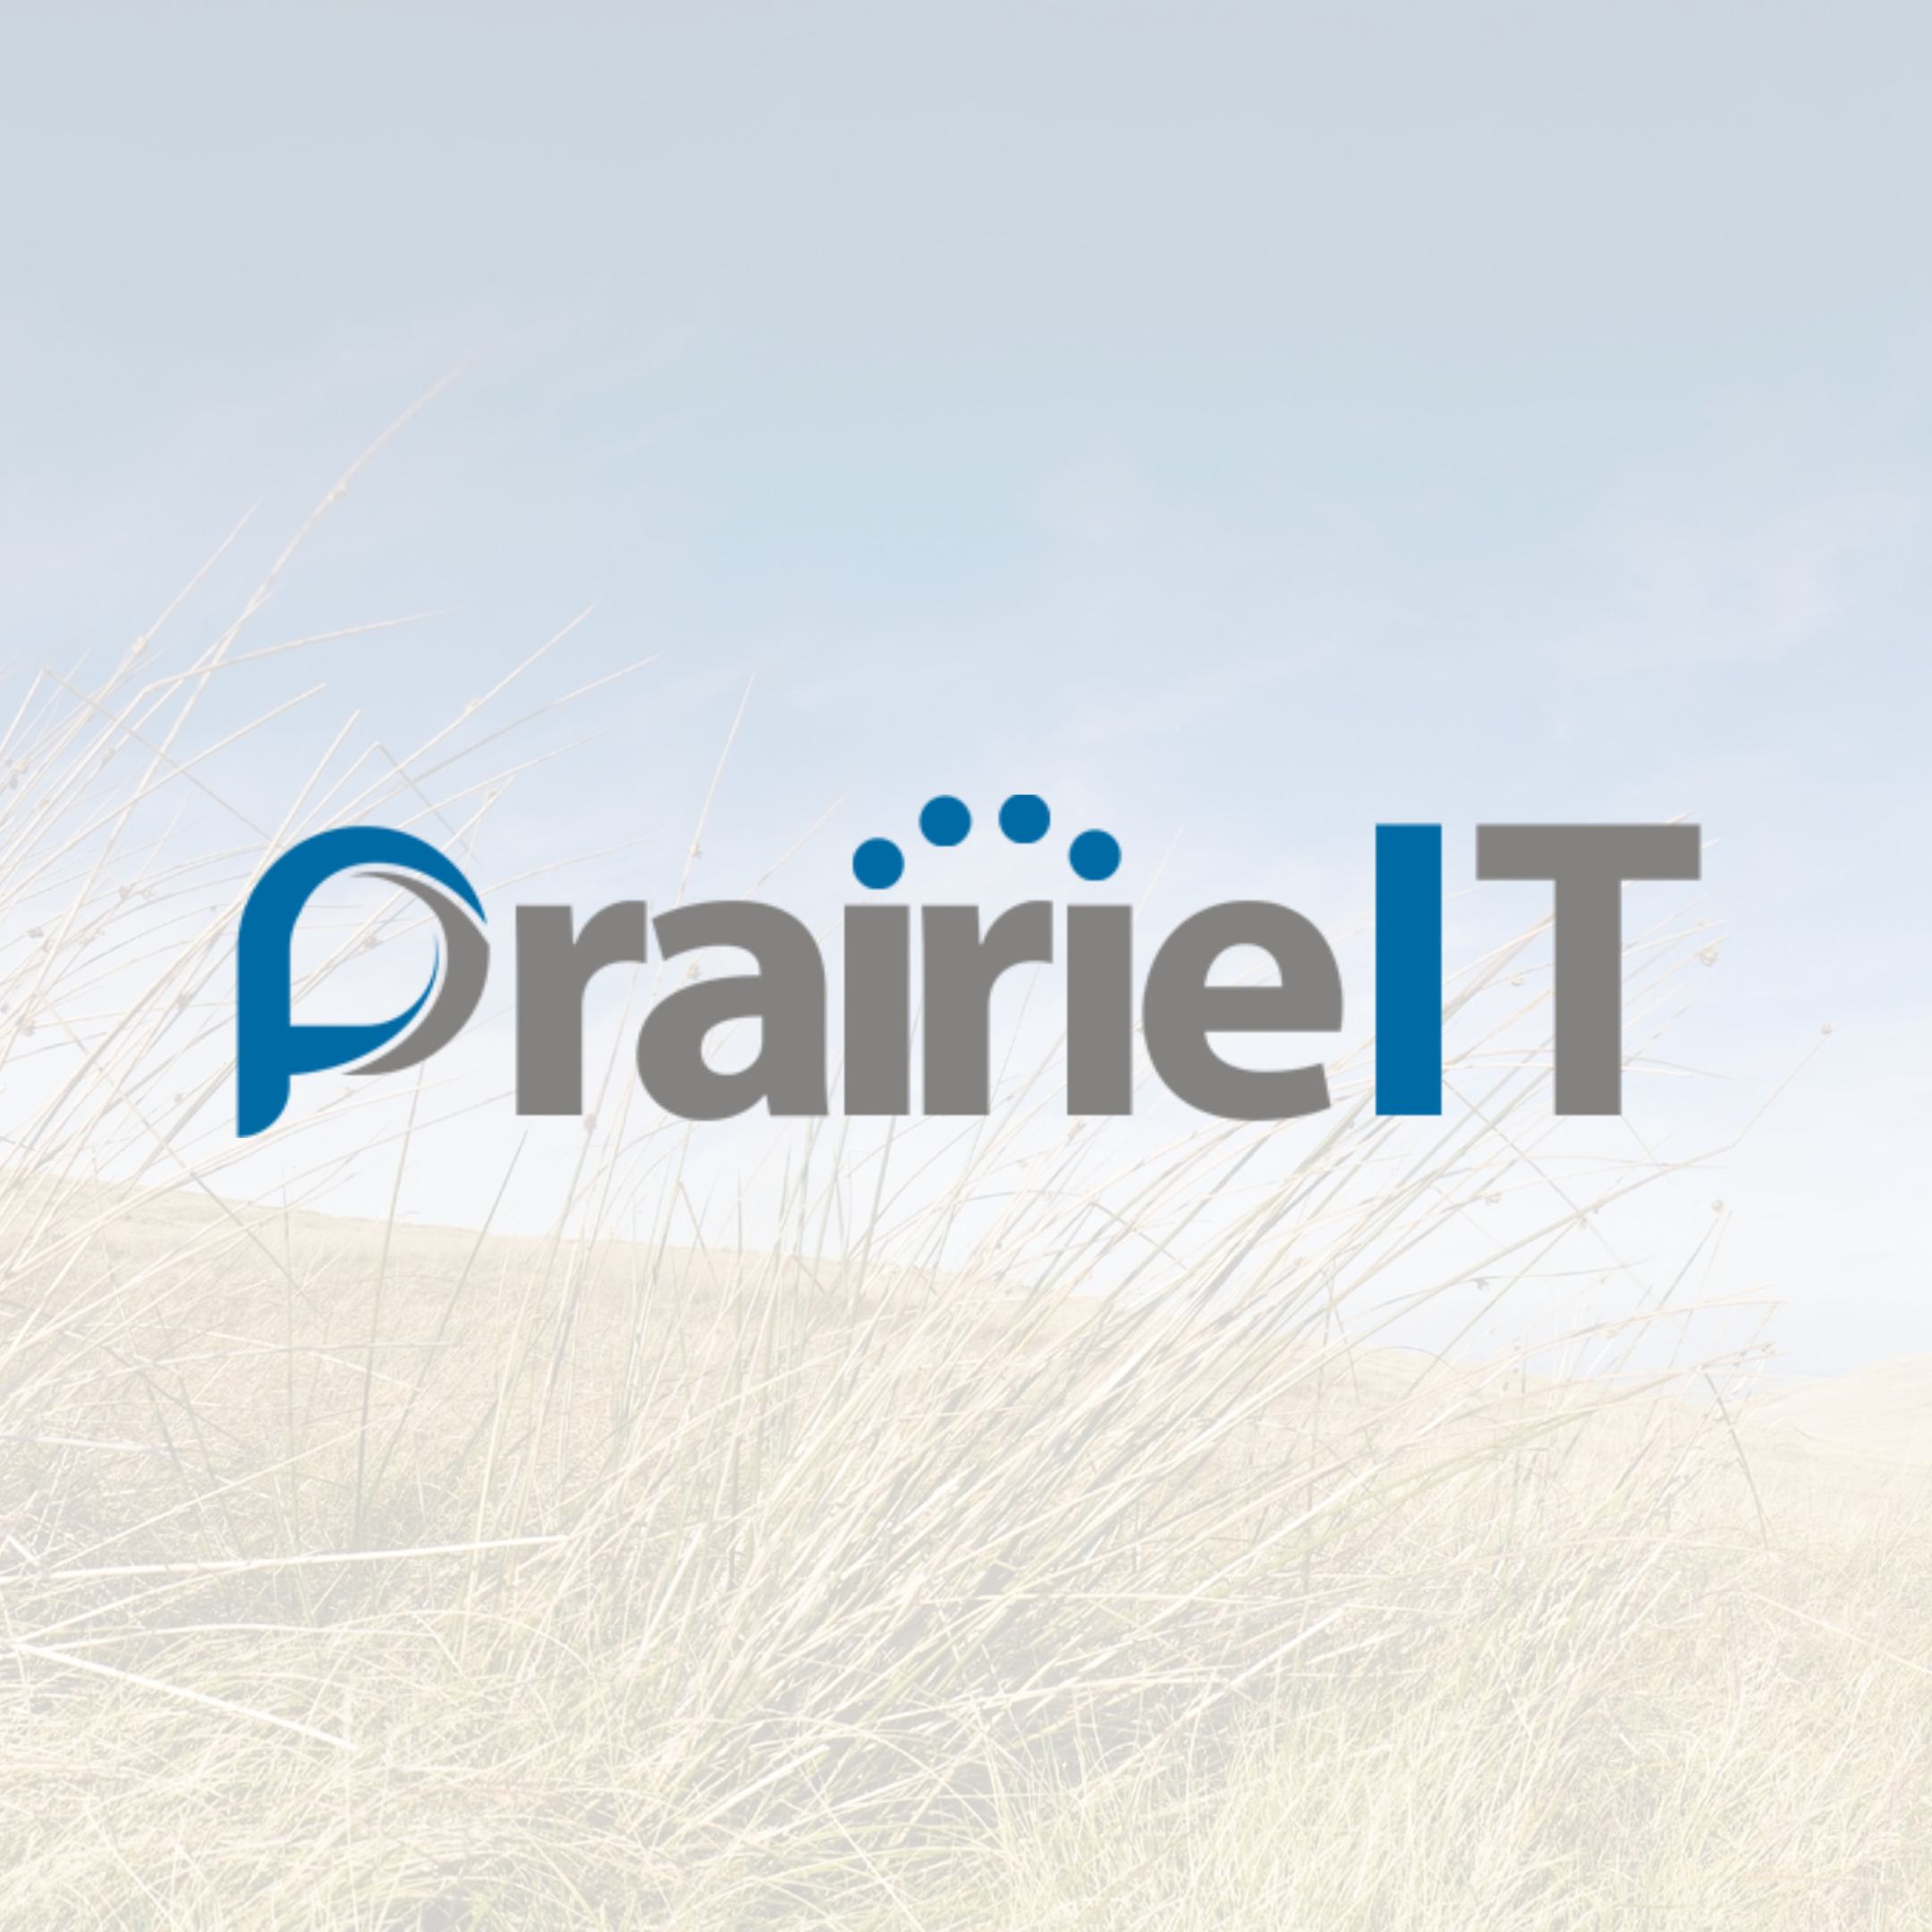 Logo for Prairie IT